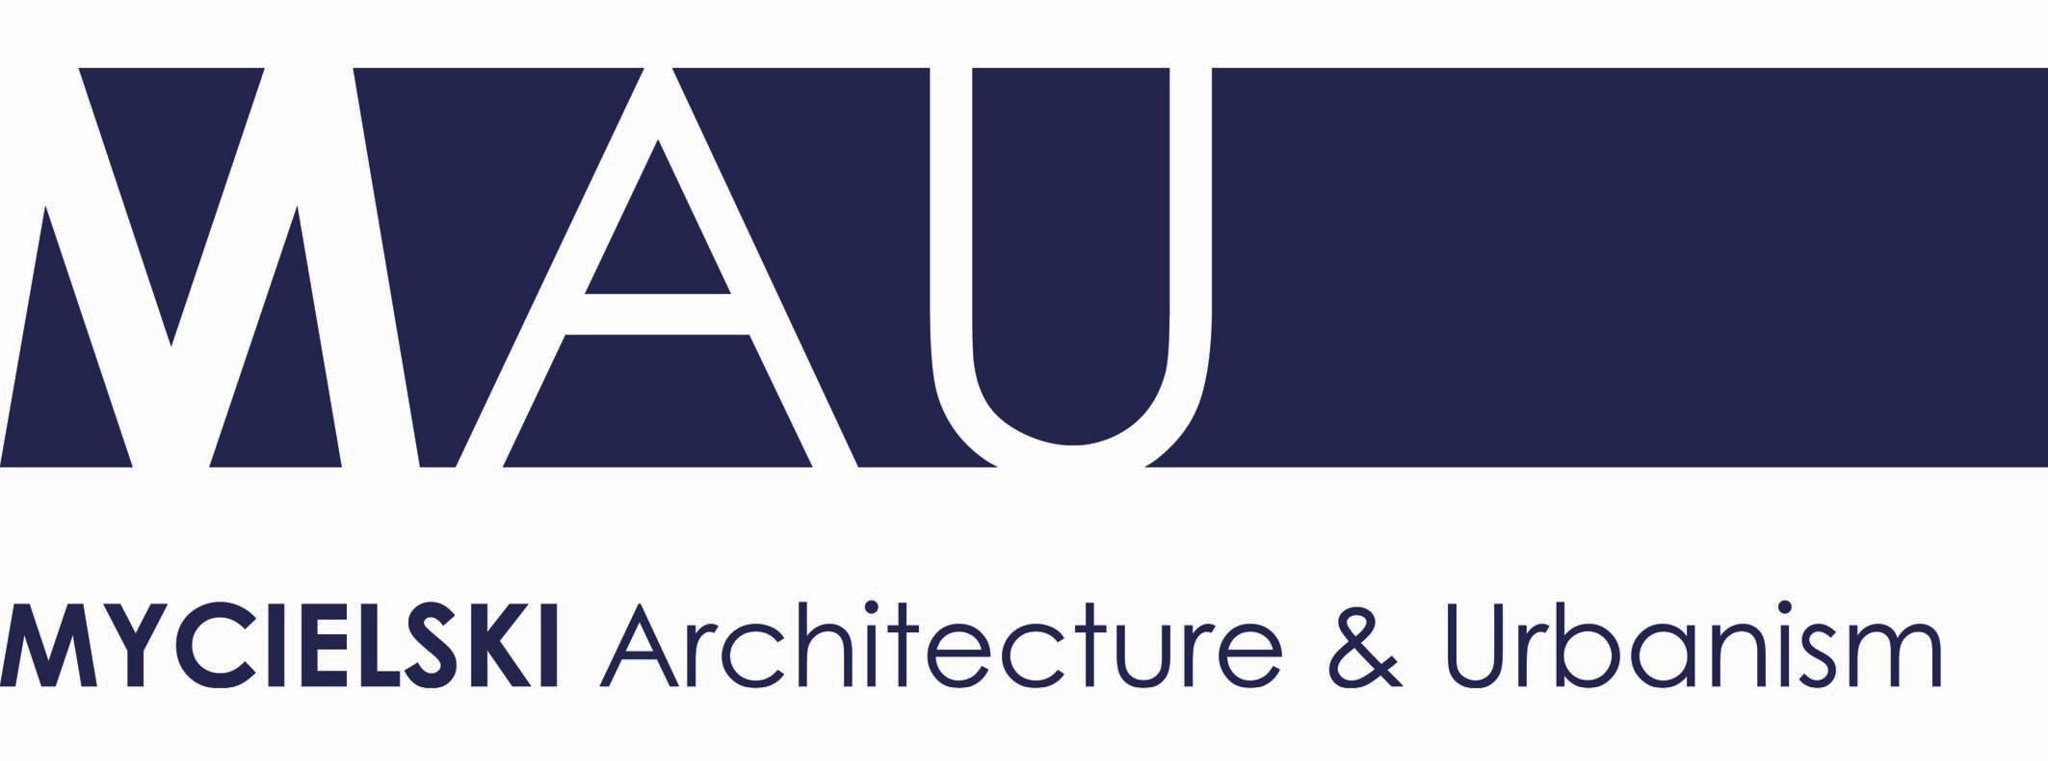 Logo MAU Mycielski Architecture & Urbanism